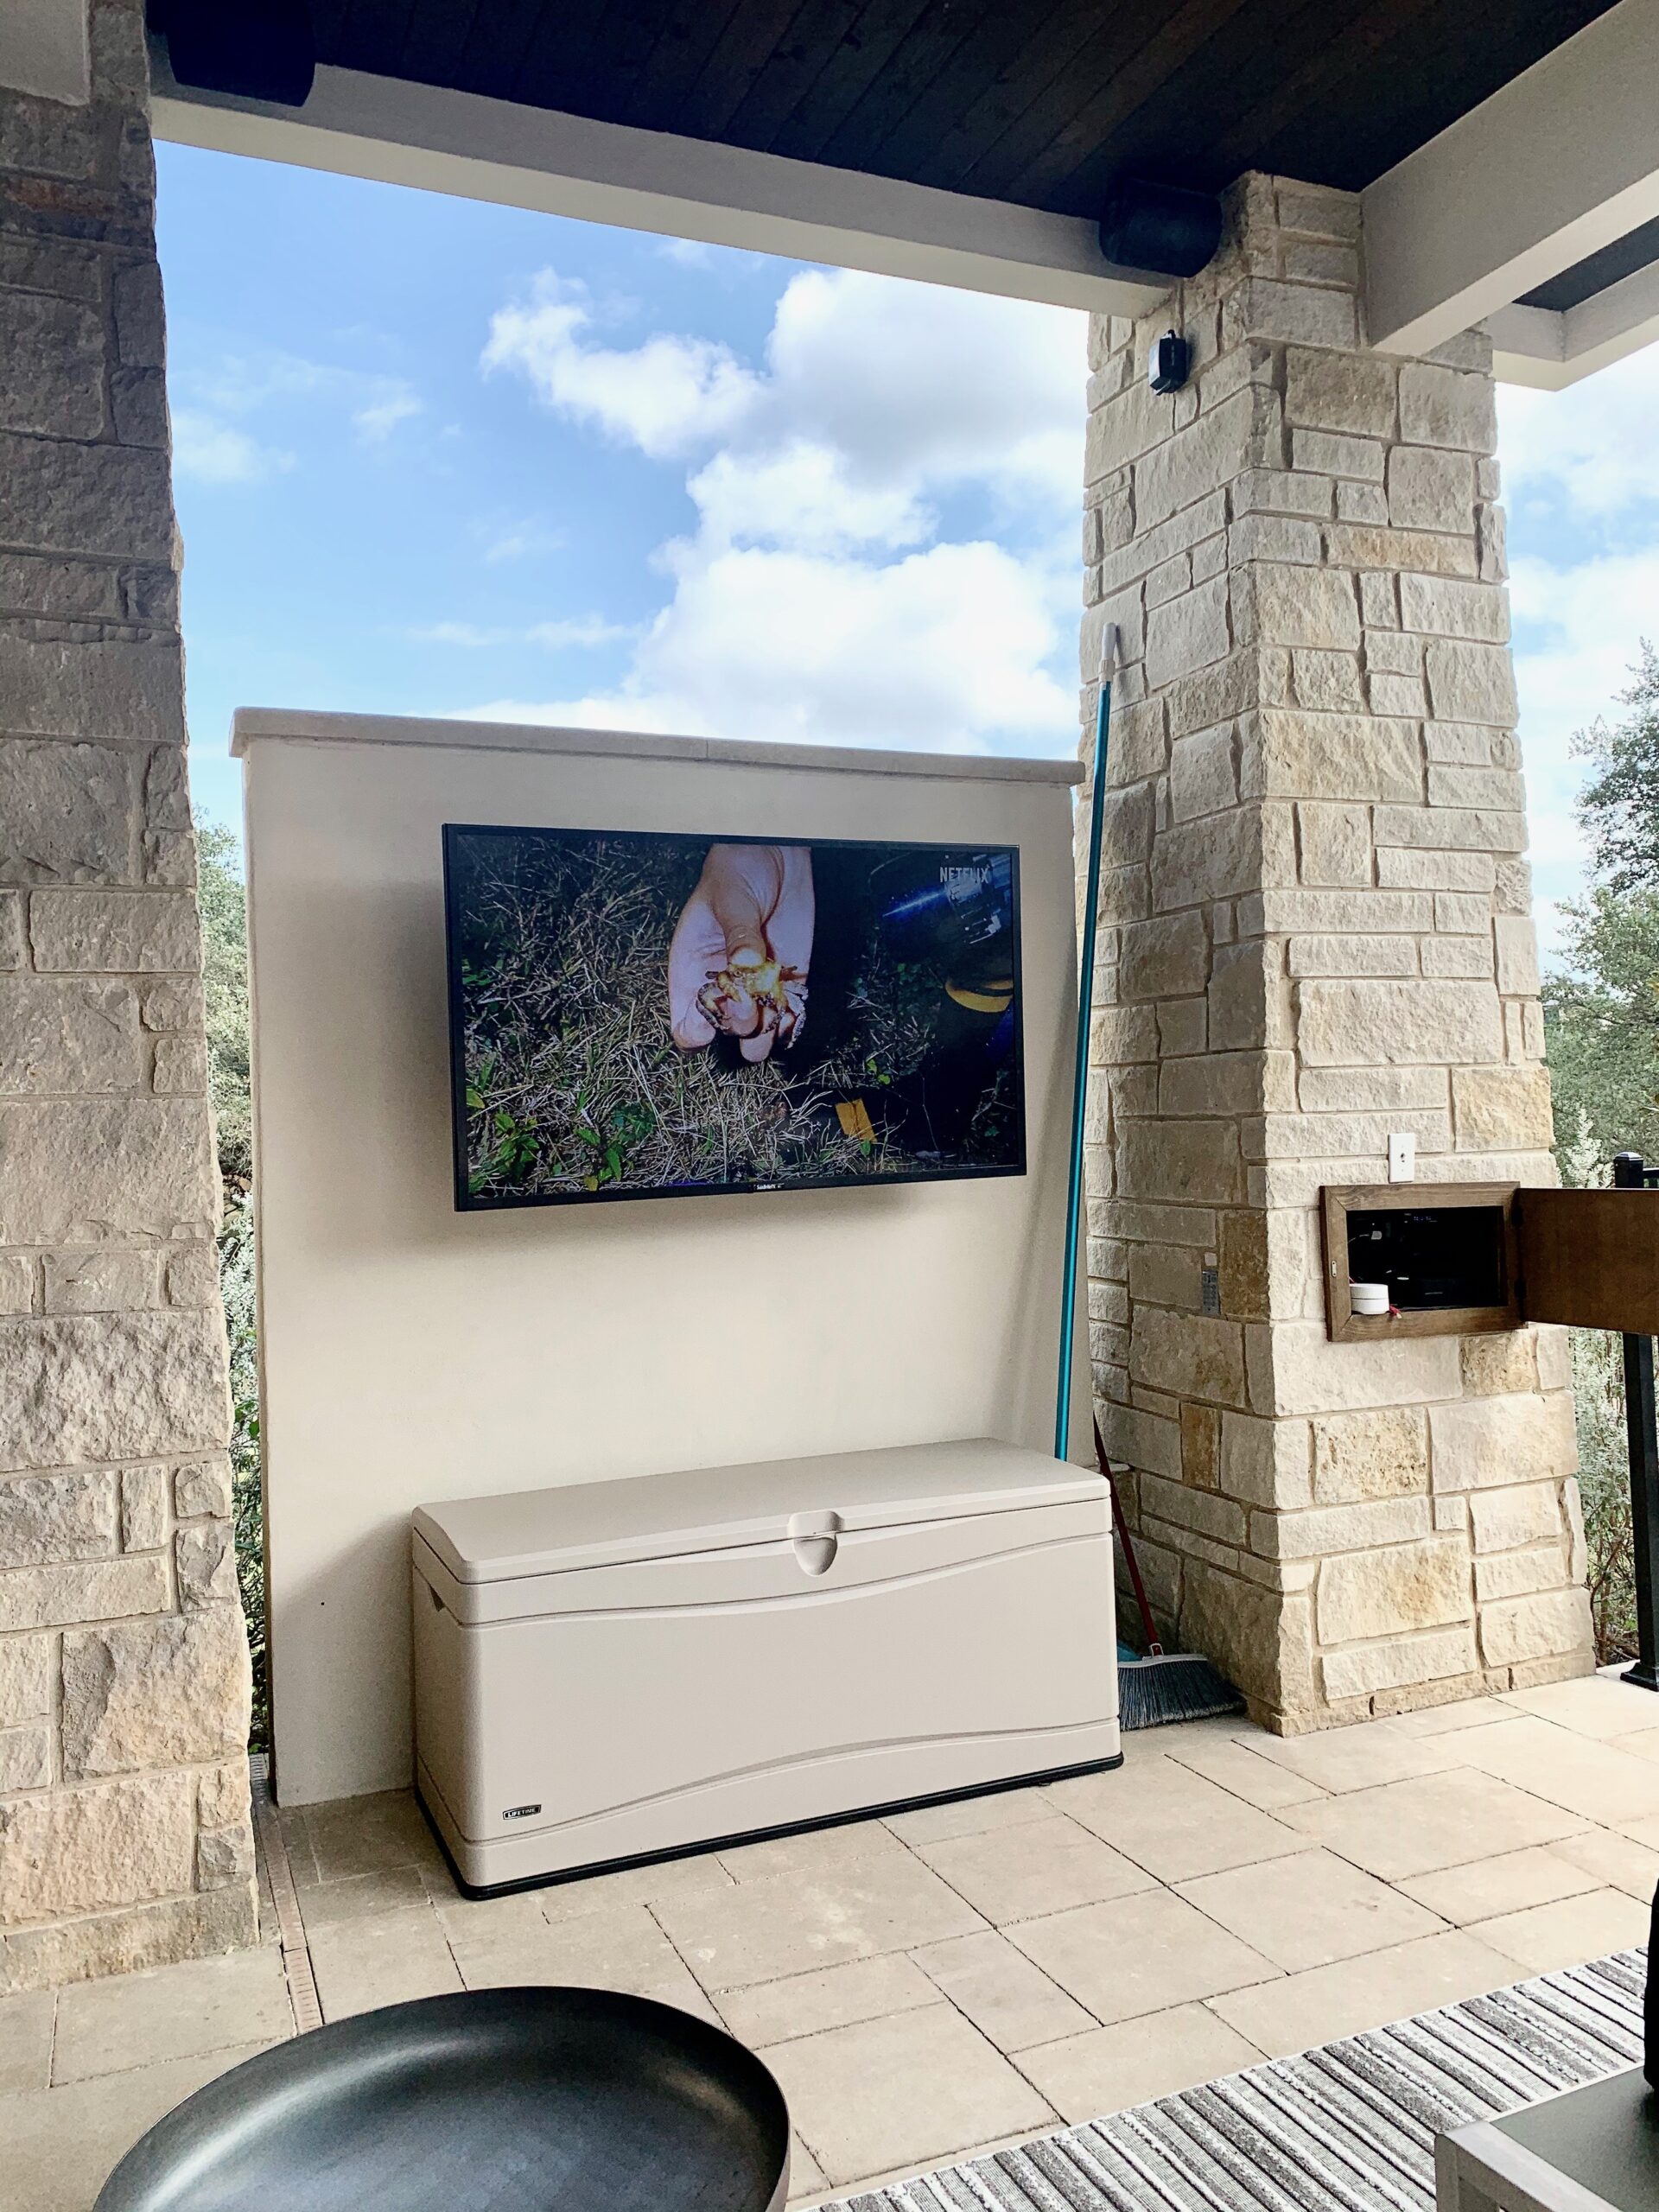 Outdoor TV Install